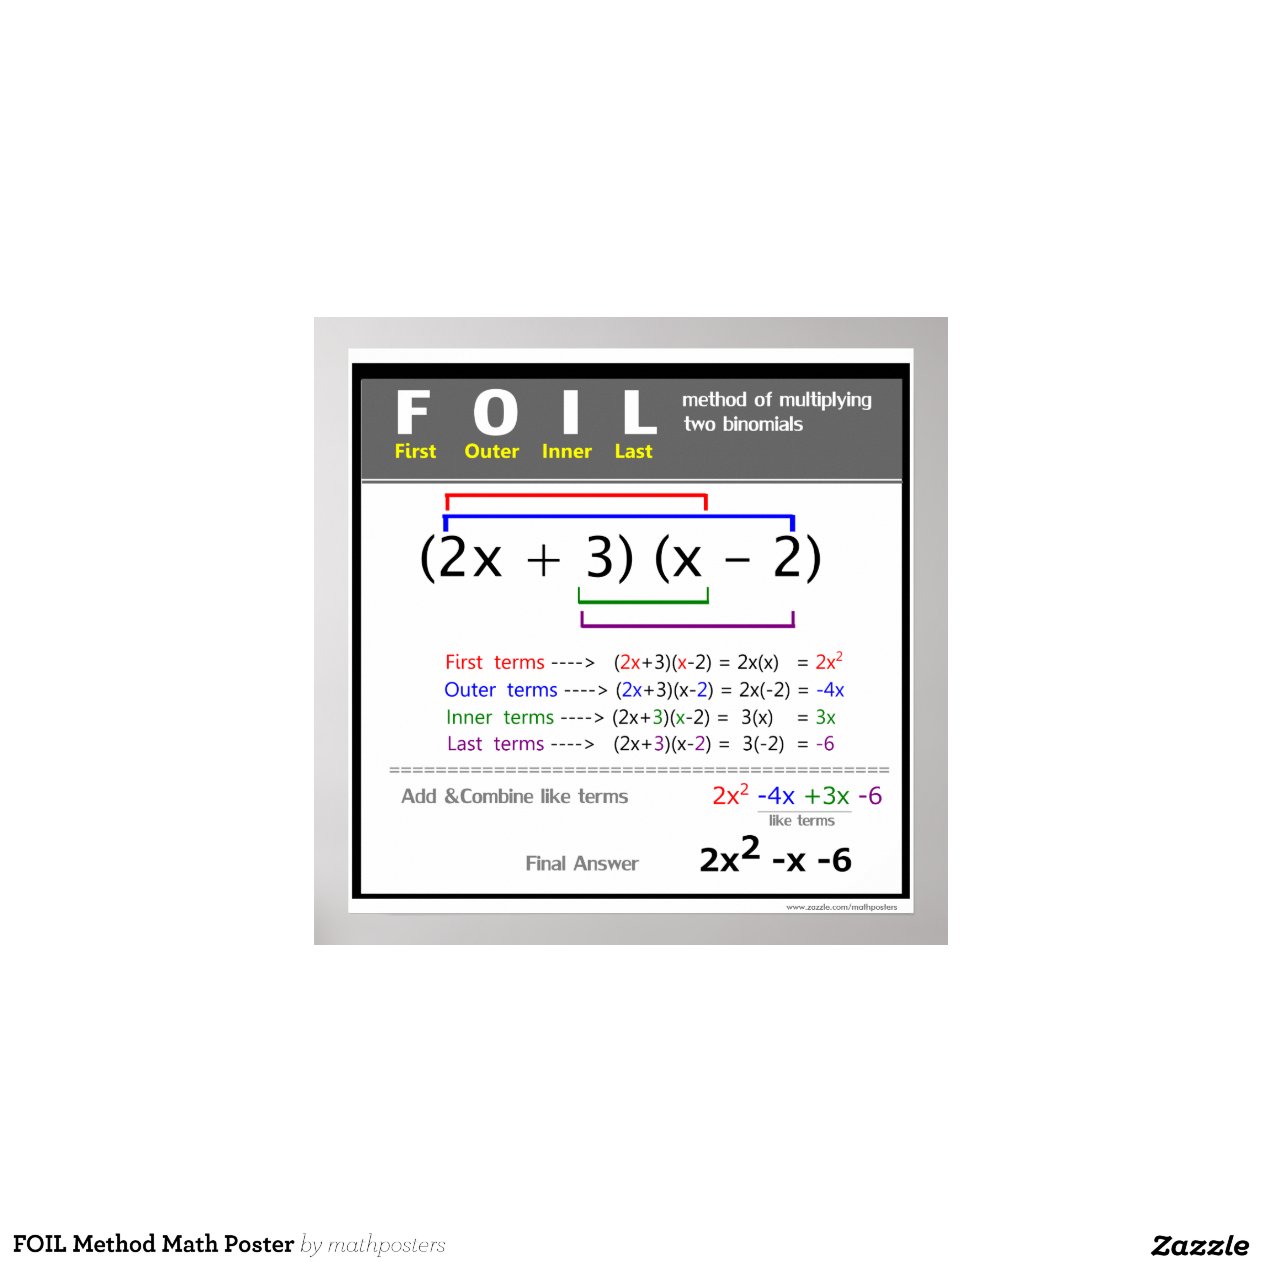 foil-method-math-poster-zazzle